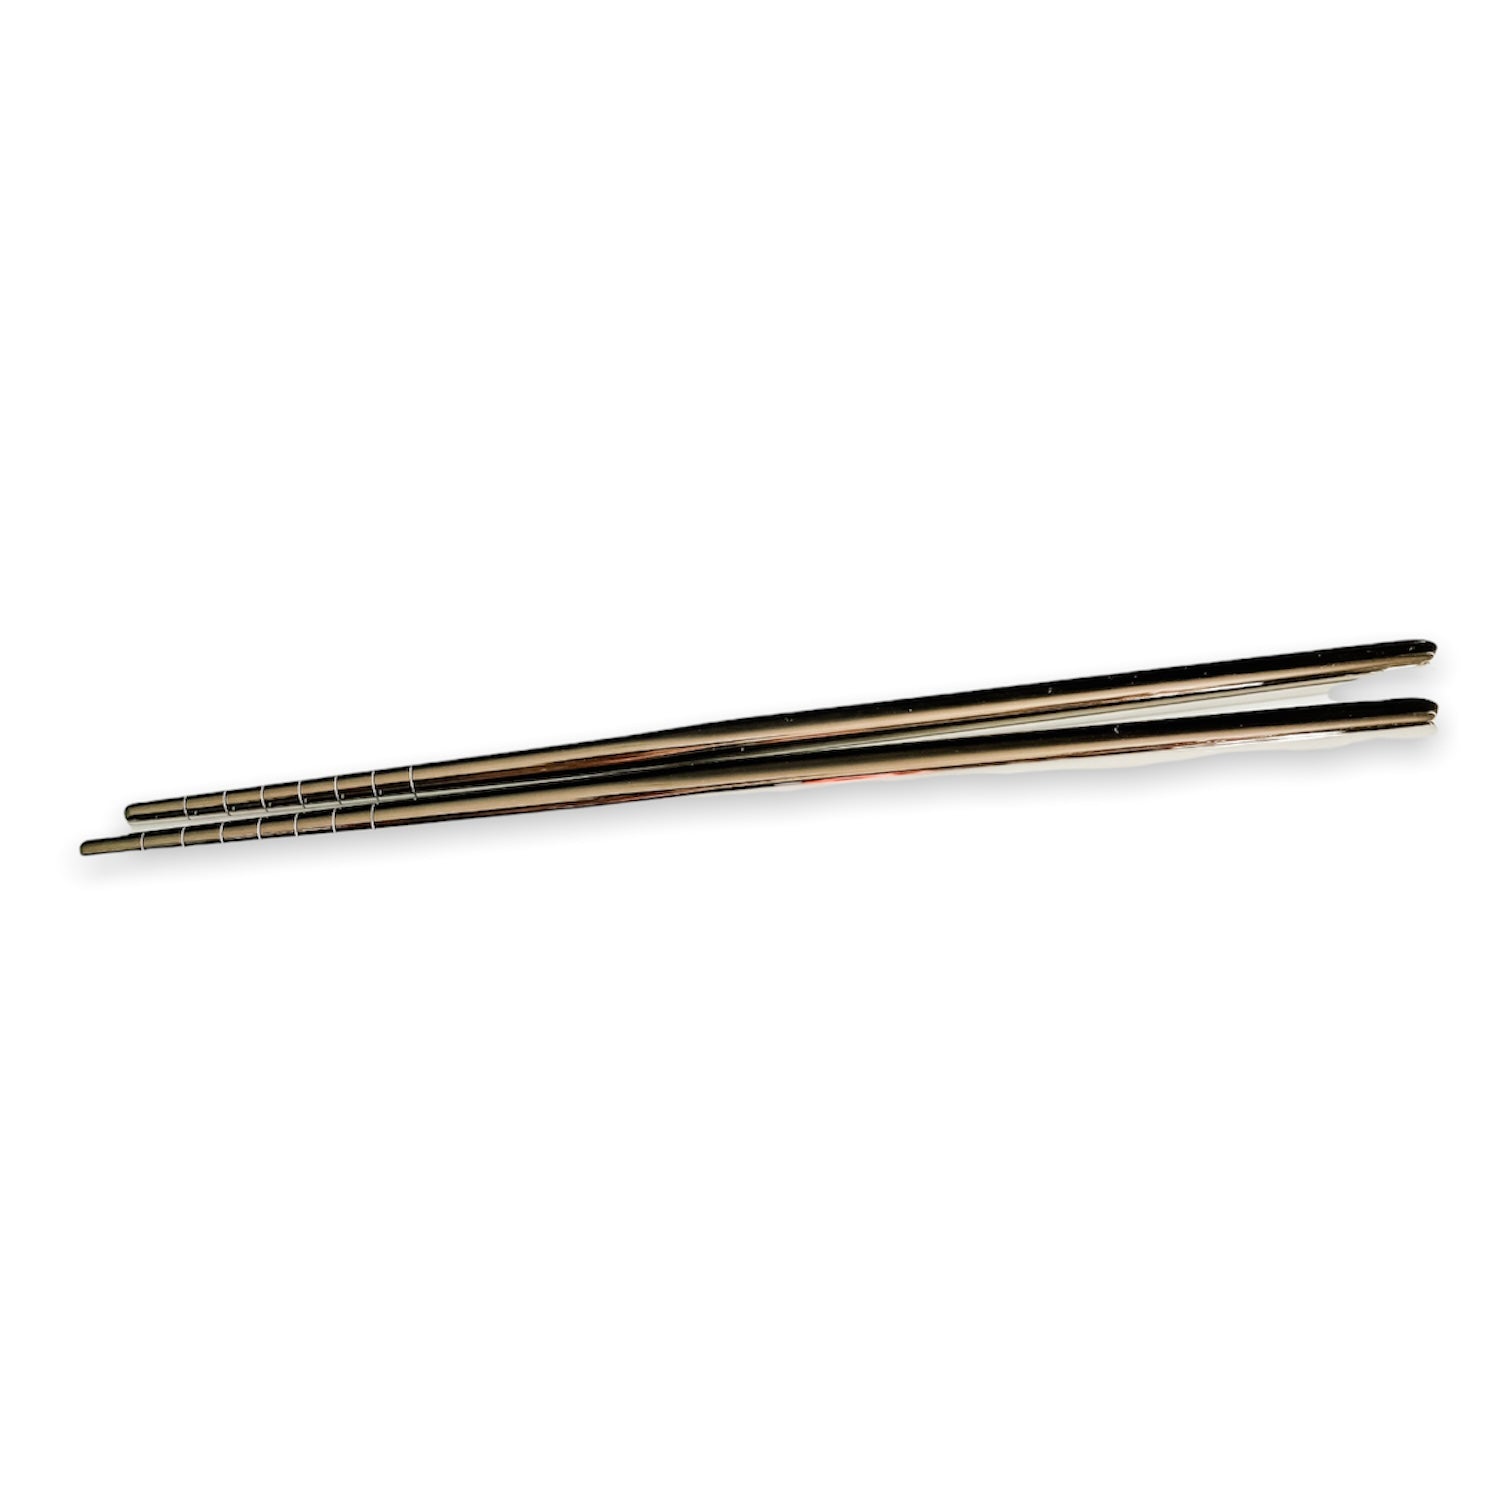 Reusable chopsticks